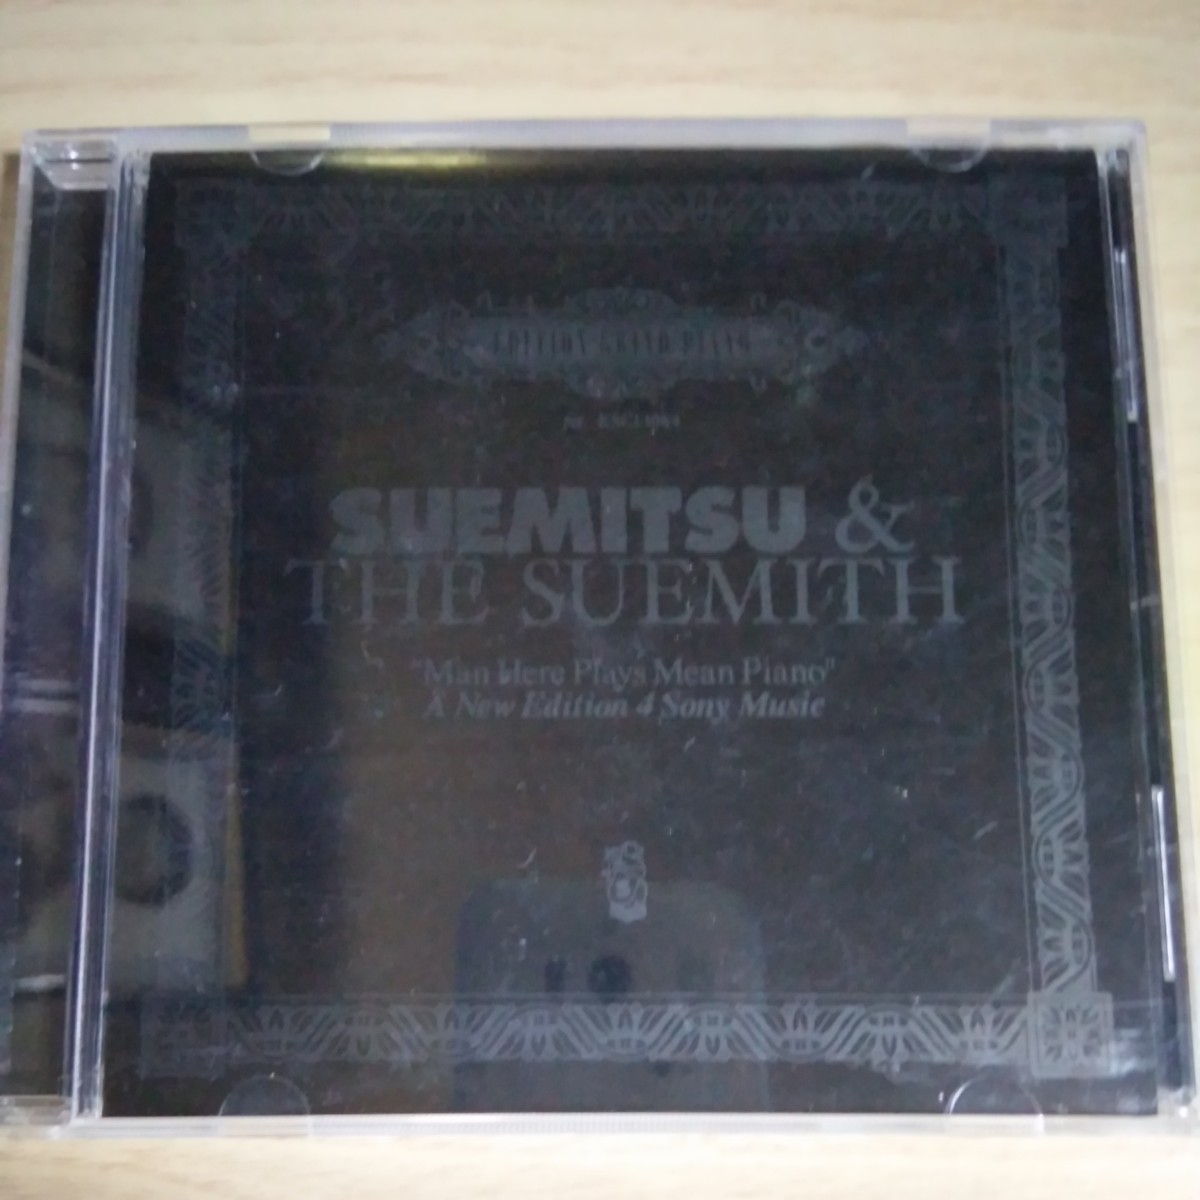 TT081　CD　SUEMITSU ＆ THE SUEMITH　１．”SUEMITSU” Here Plays Mean Piano　２．Irony_画像1